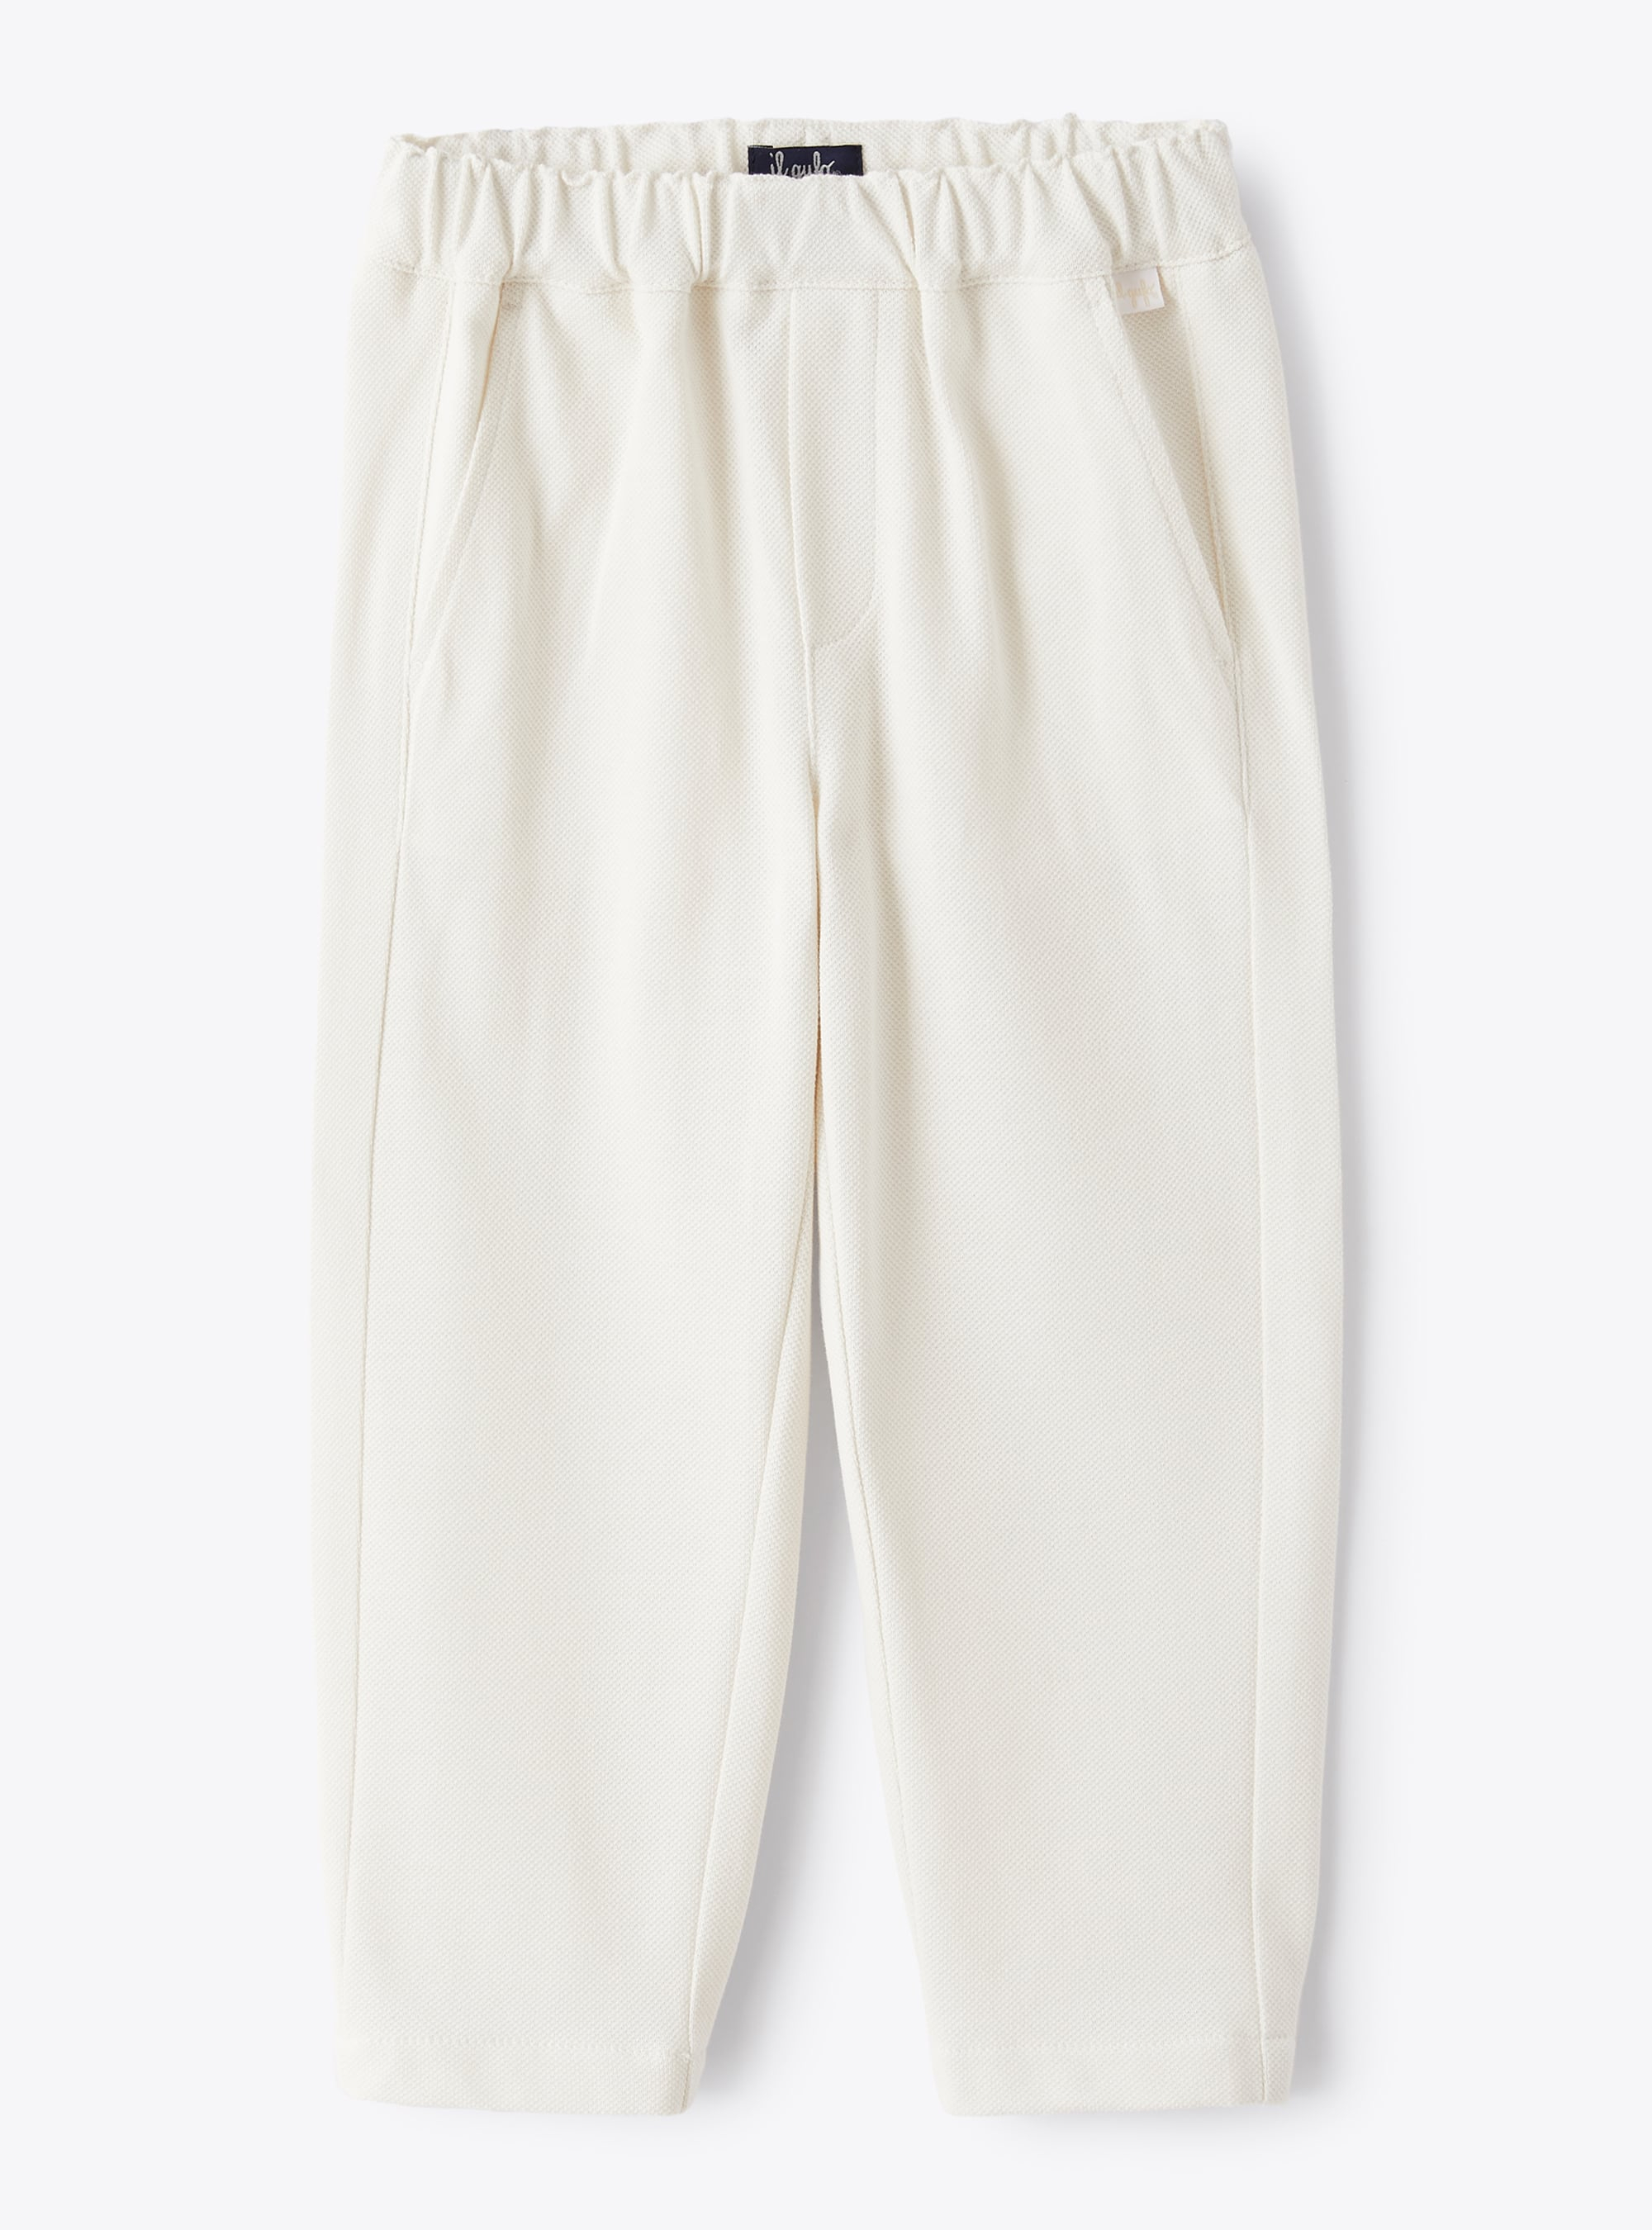 Pantalone in piquet bianco - Pantaloni - Il Gufo